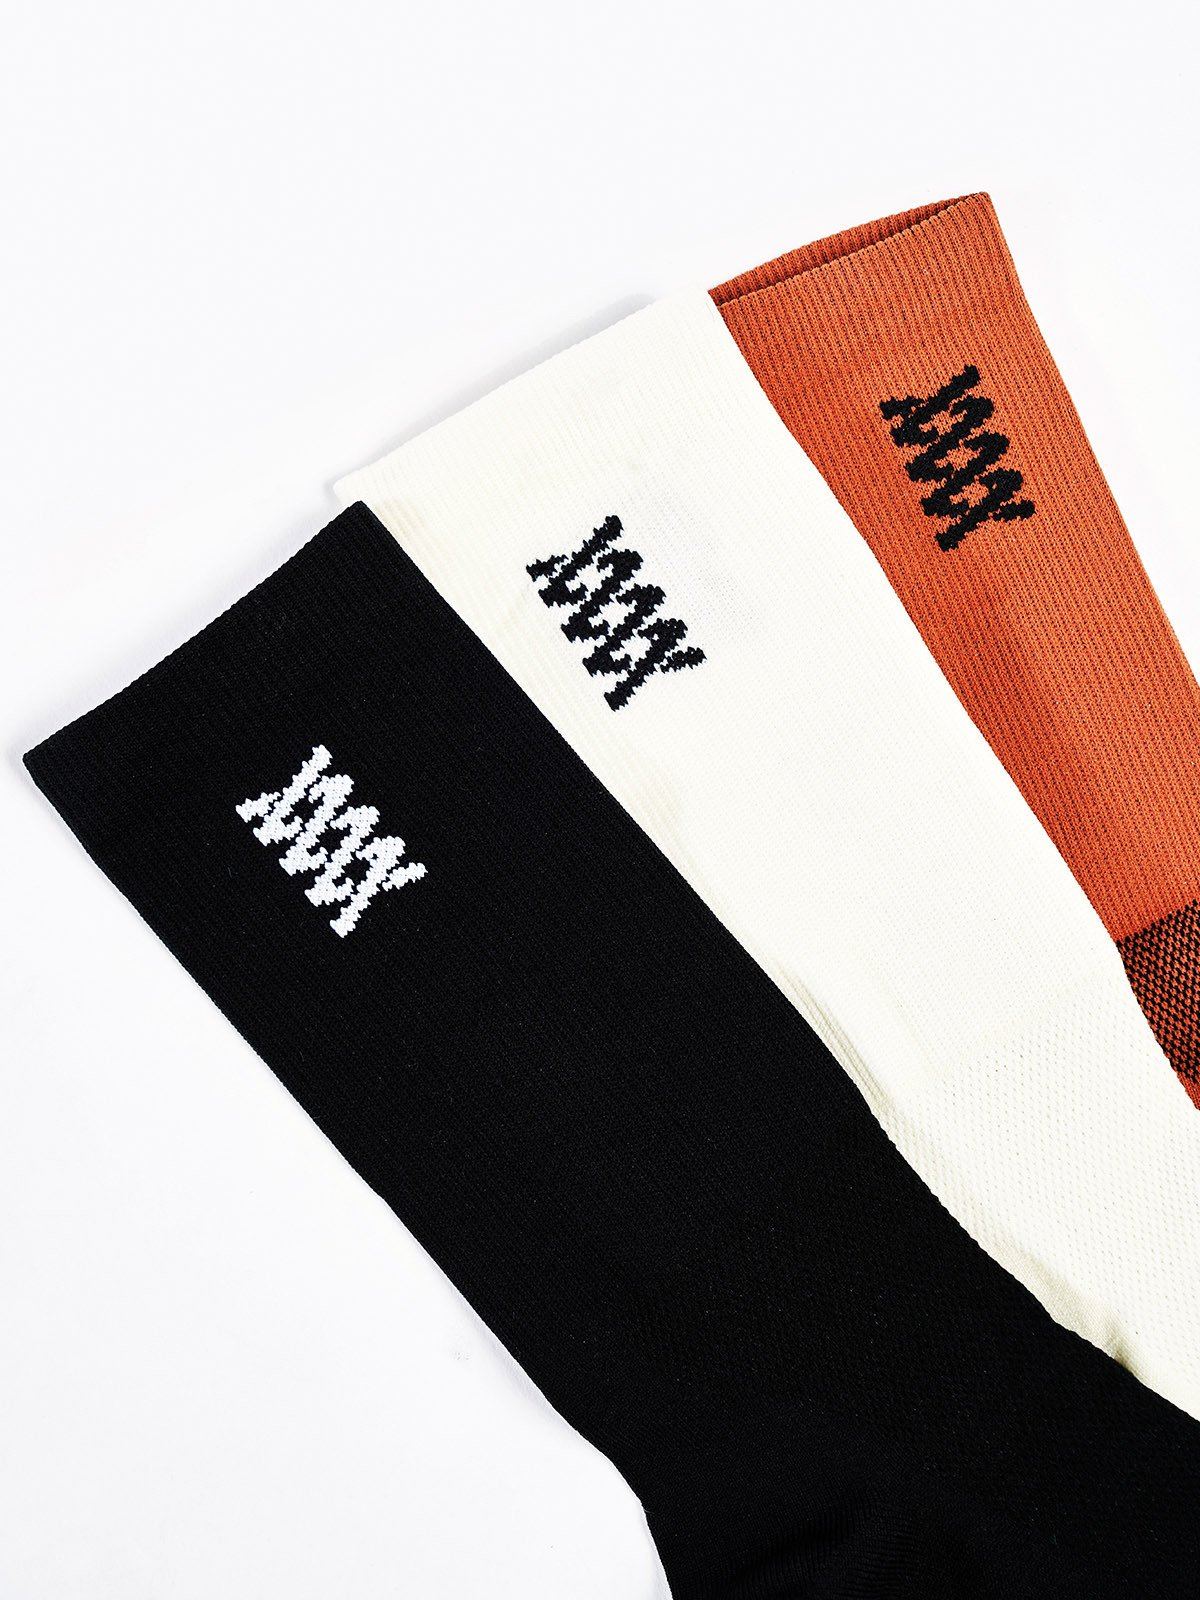 Mission Pro Socks by Mission Workshop - Weatherproof Bags & Technical Apparel - San Francisco & Los Angeles - Construit pour durer - Garanti pour toujours